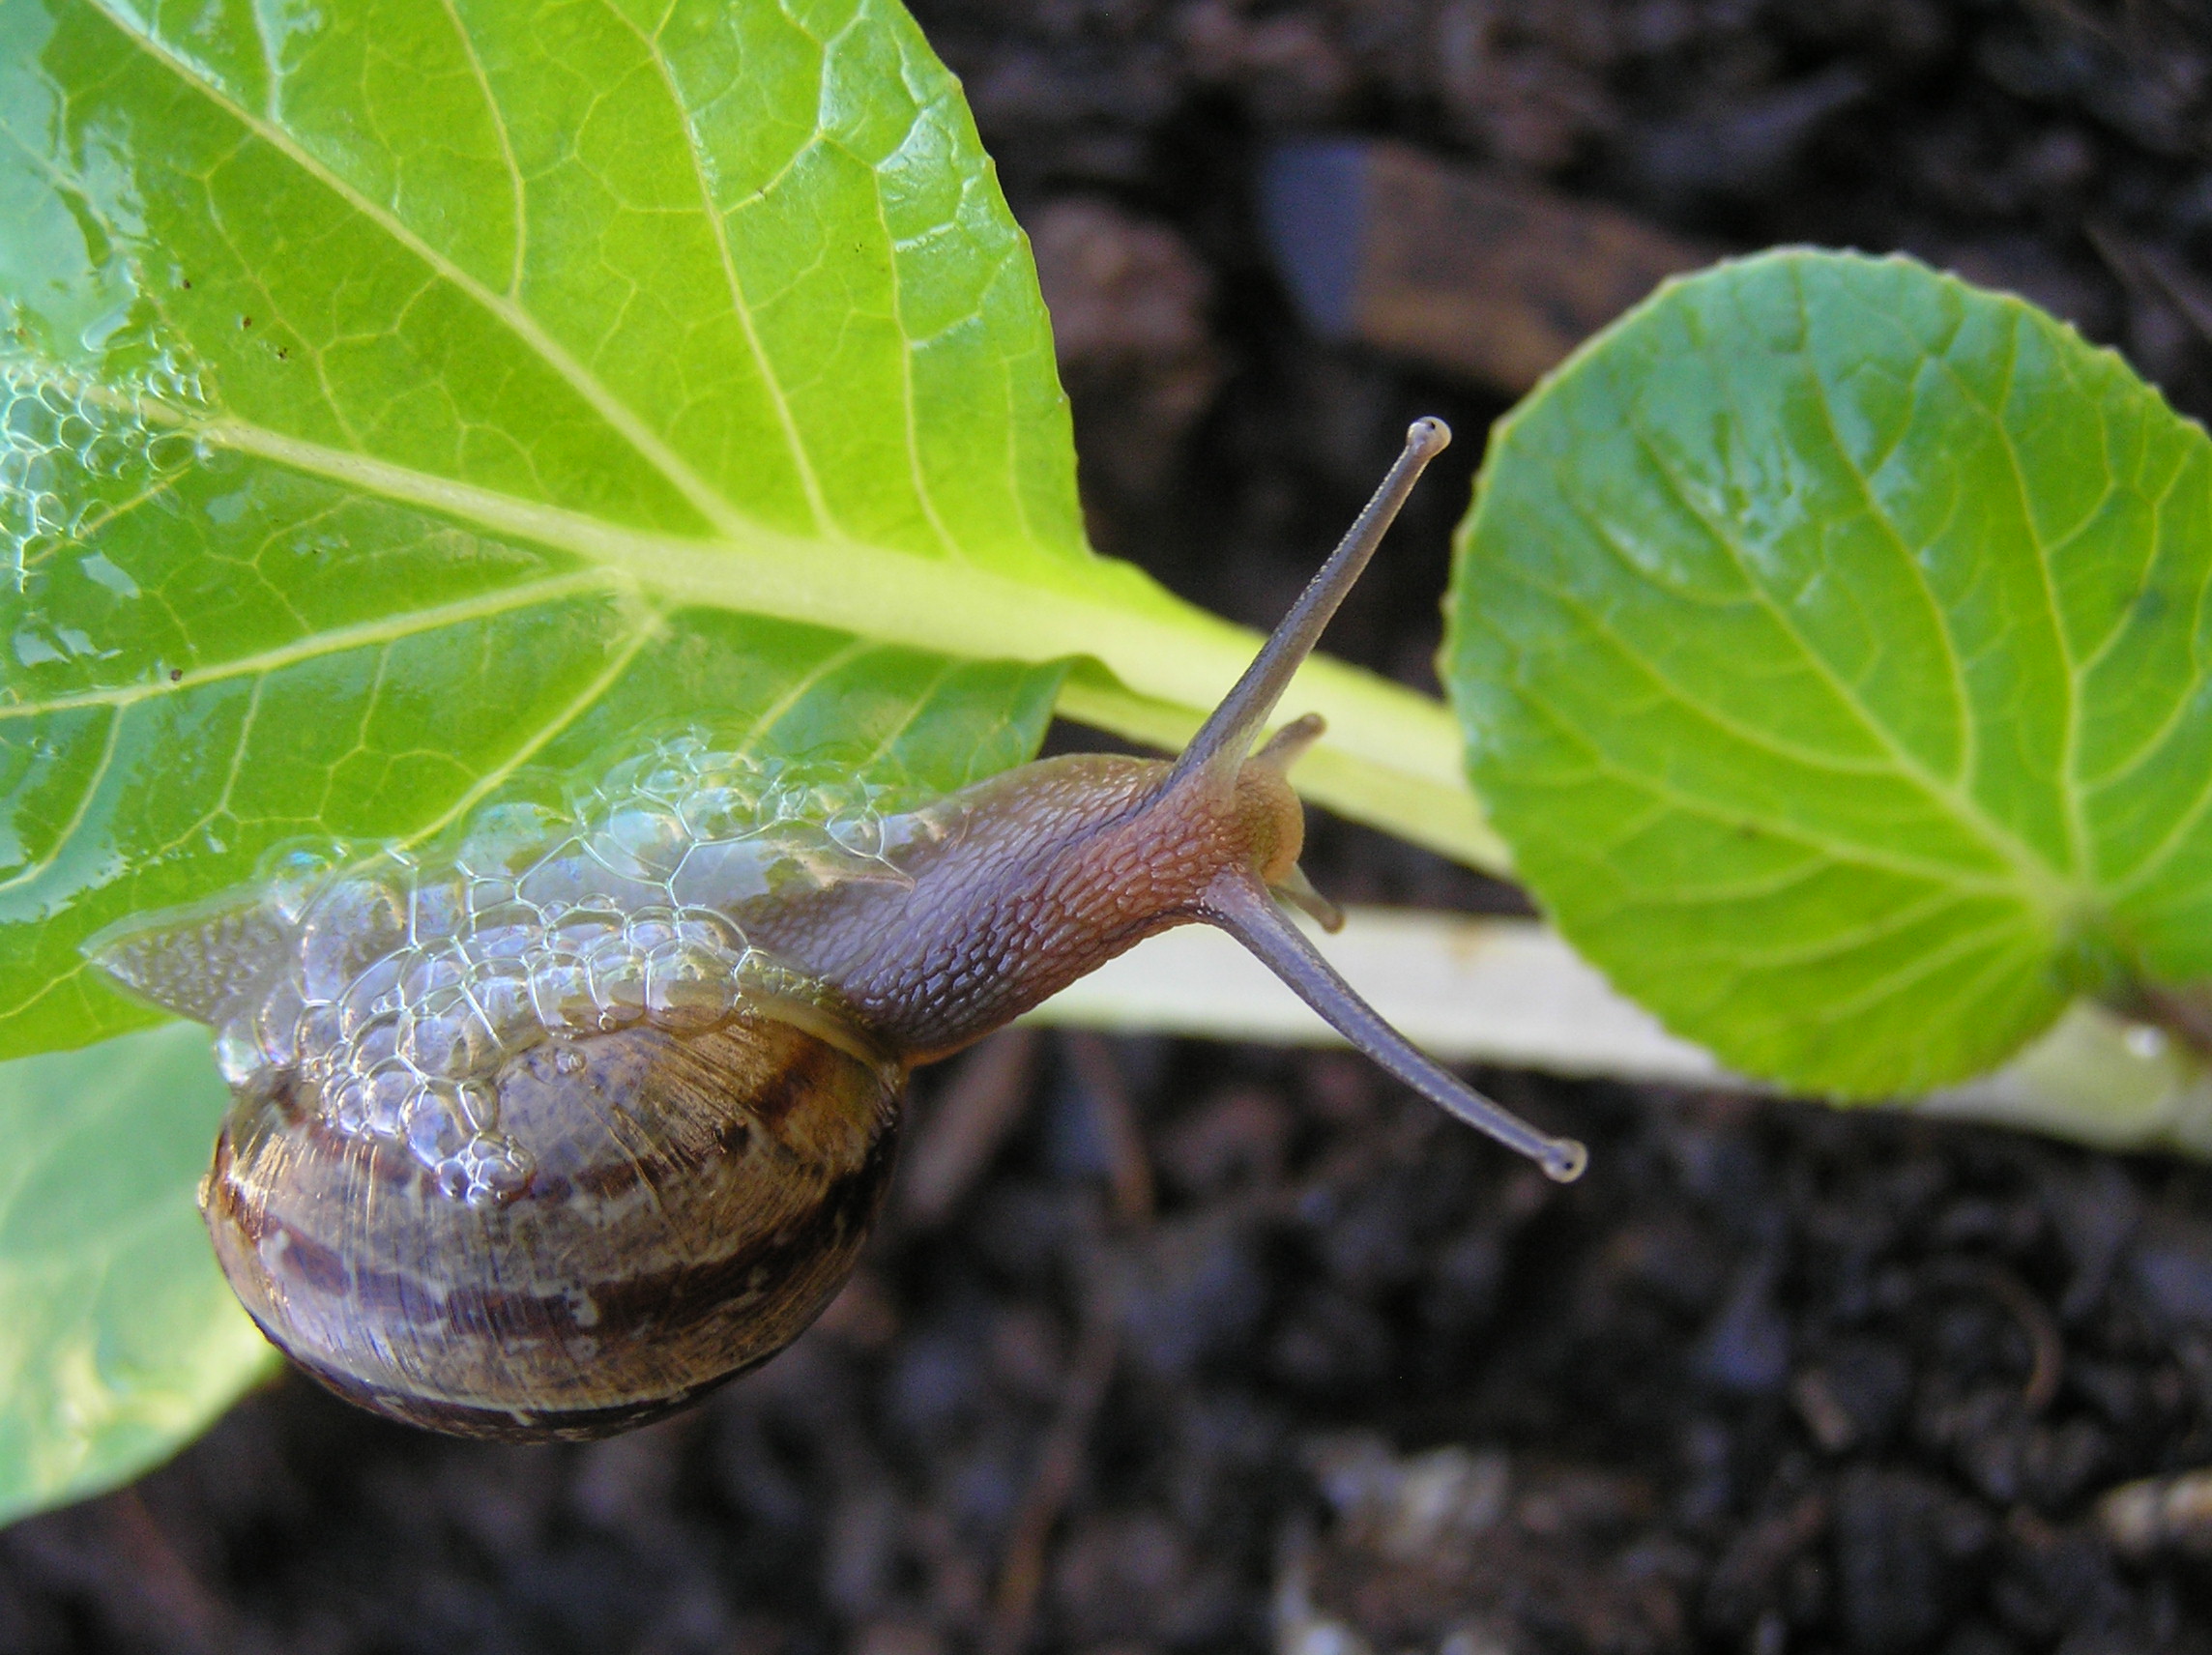 Snails love seedlings